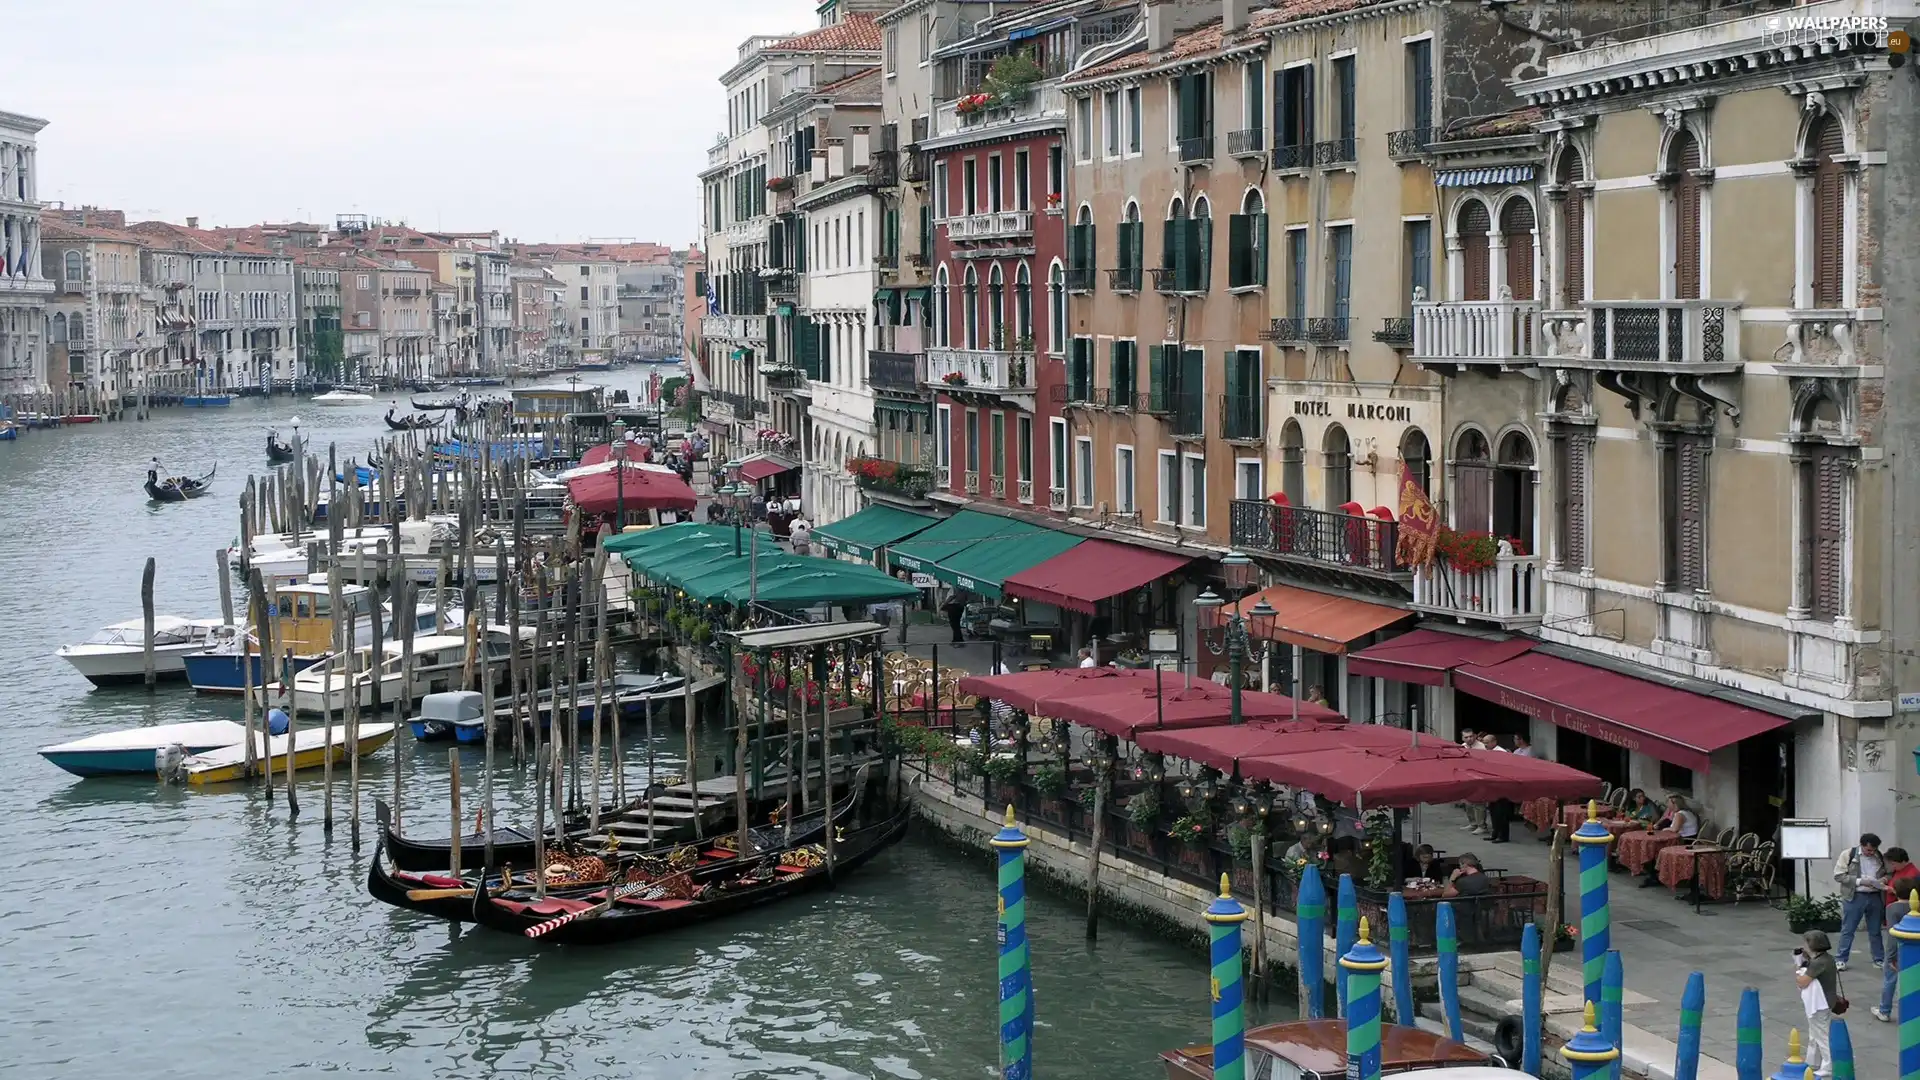 Boats, Venice, Italy